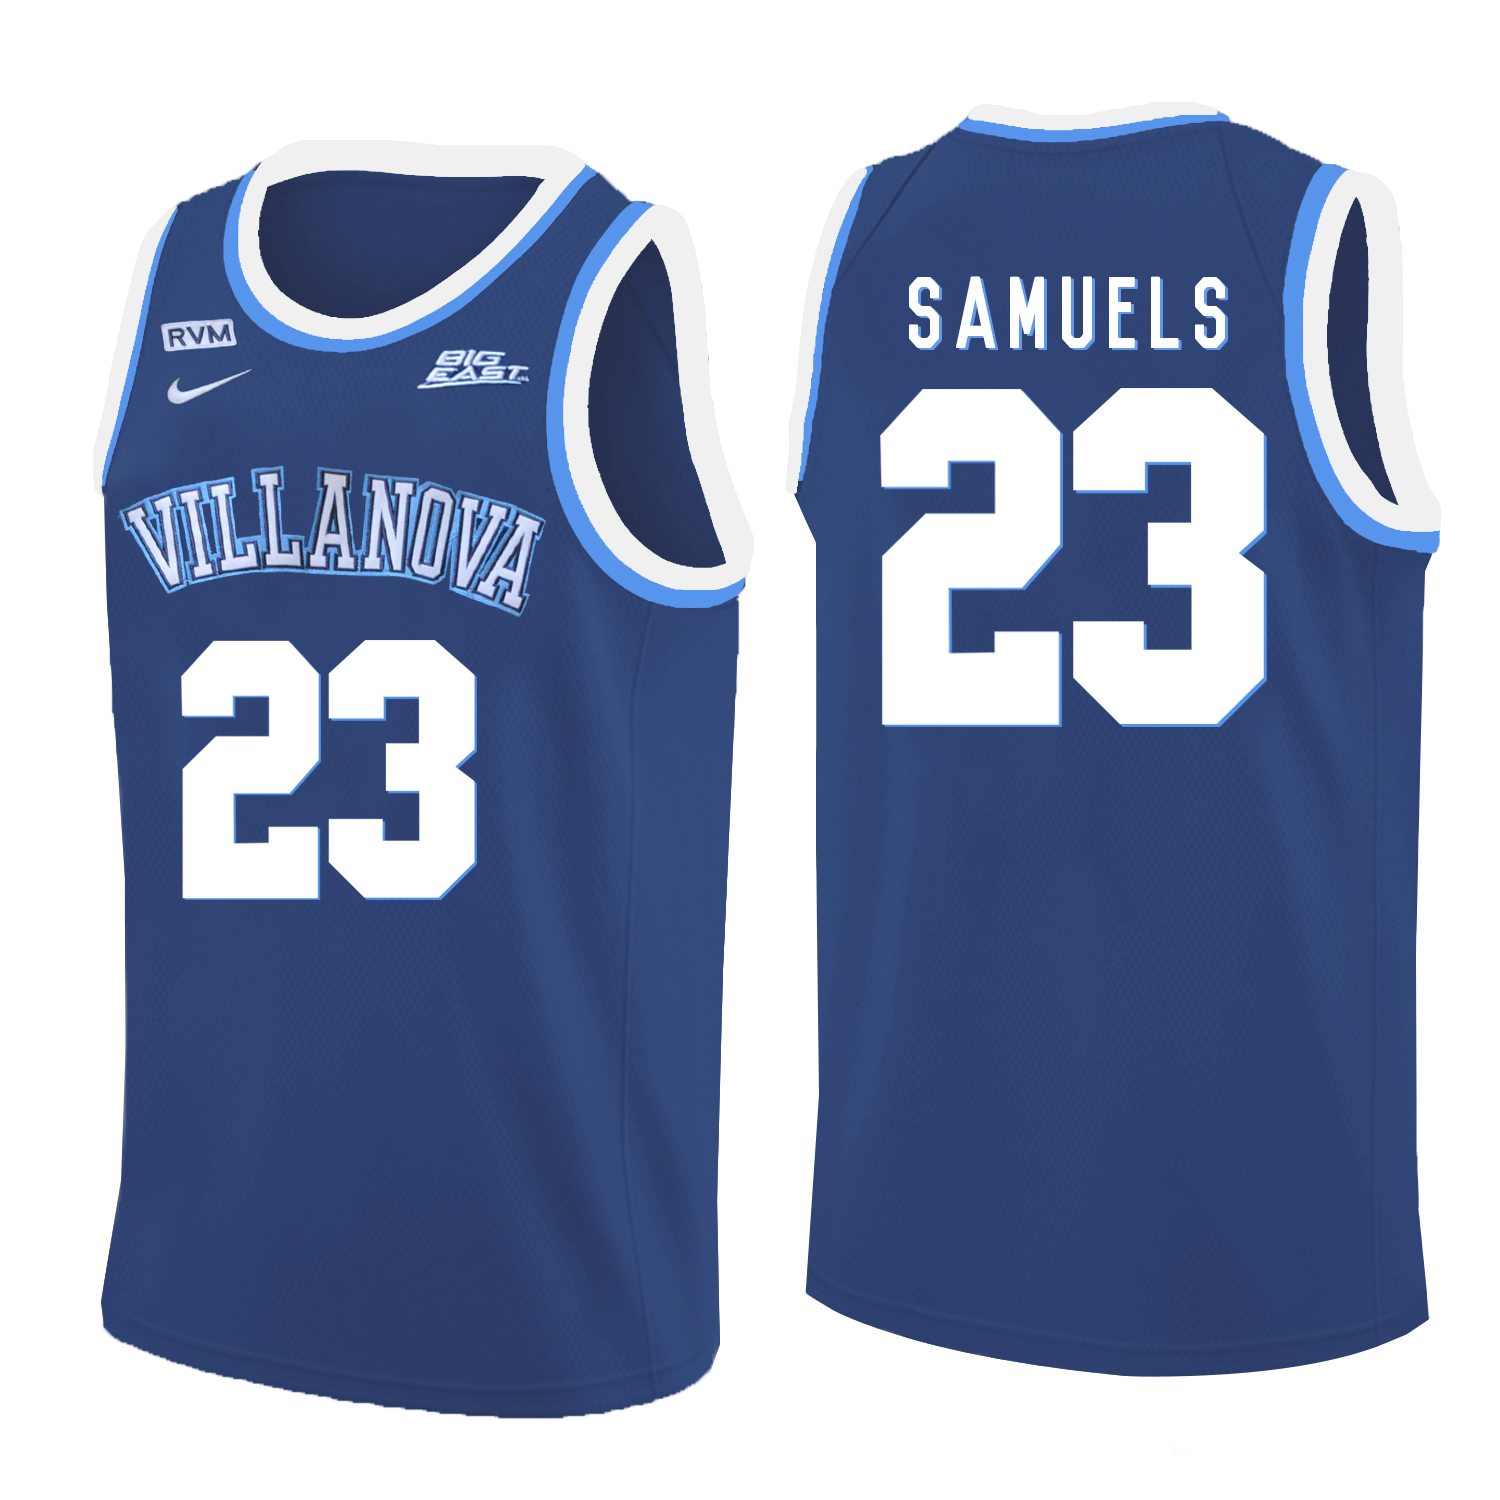 Villanova Wildcats 23 Jermaine Samuels Blue College Basketball Jersey